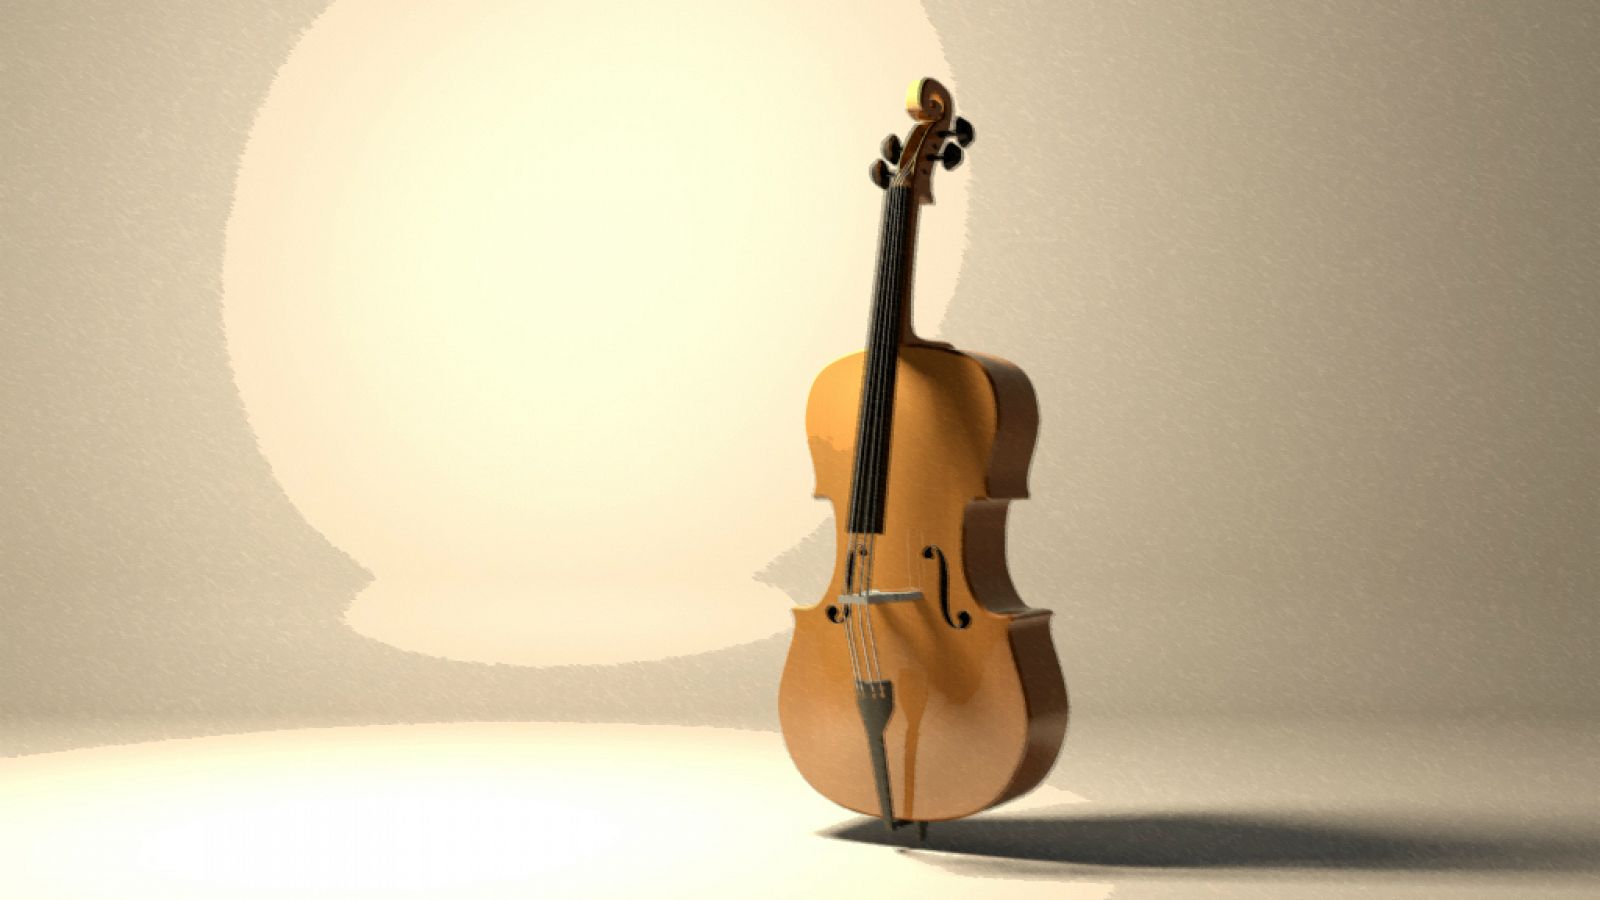 Monográfico sobre el violonchelo